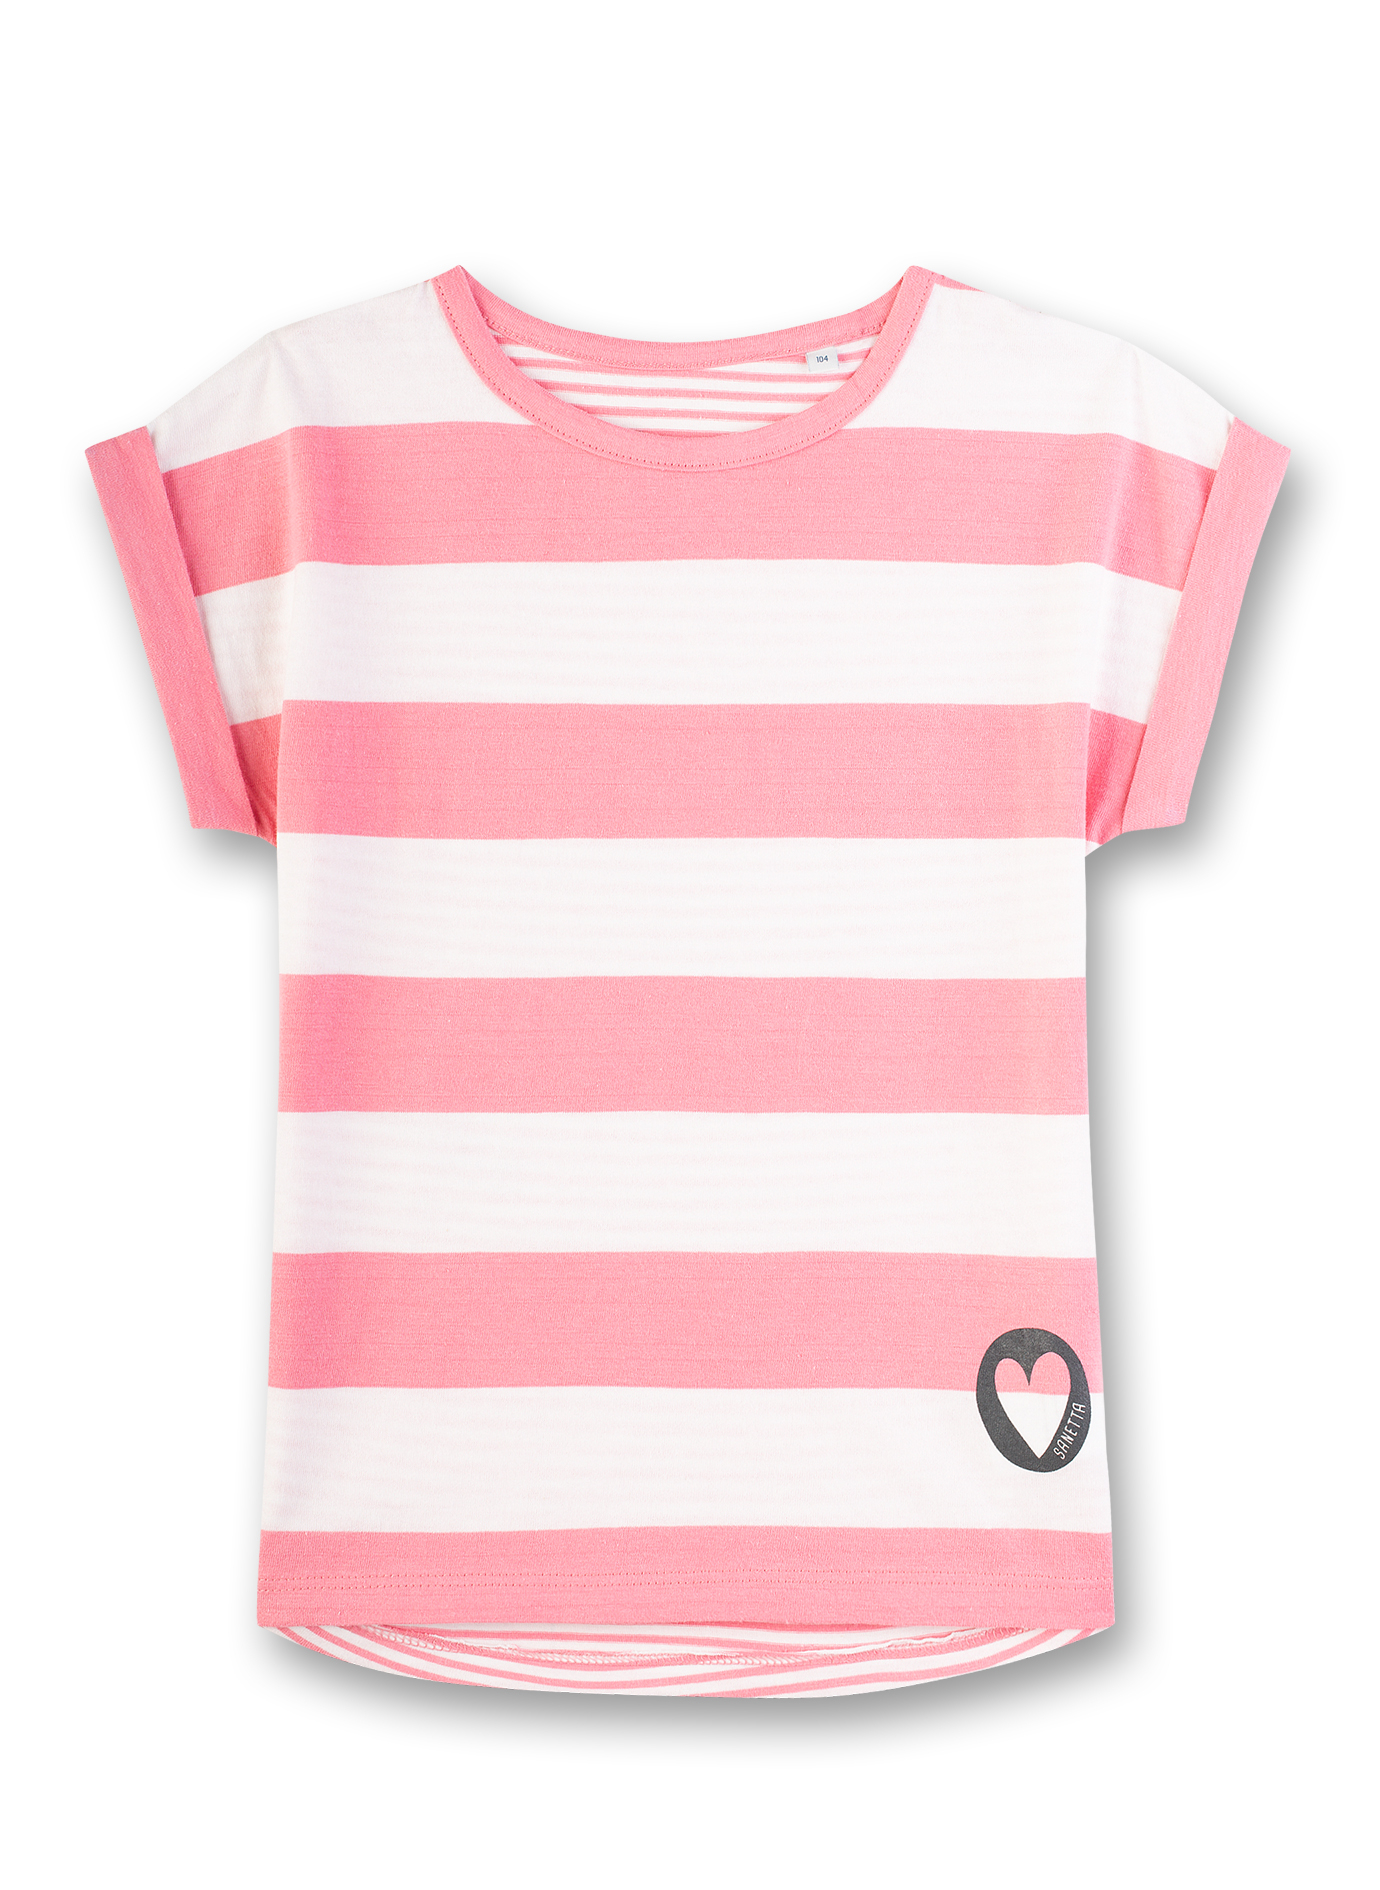 Mädchen T-Shirt Rosa-geringelt Sweet Heart